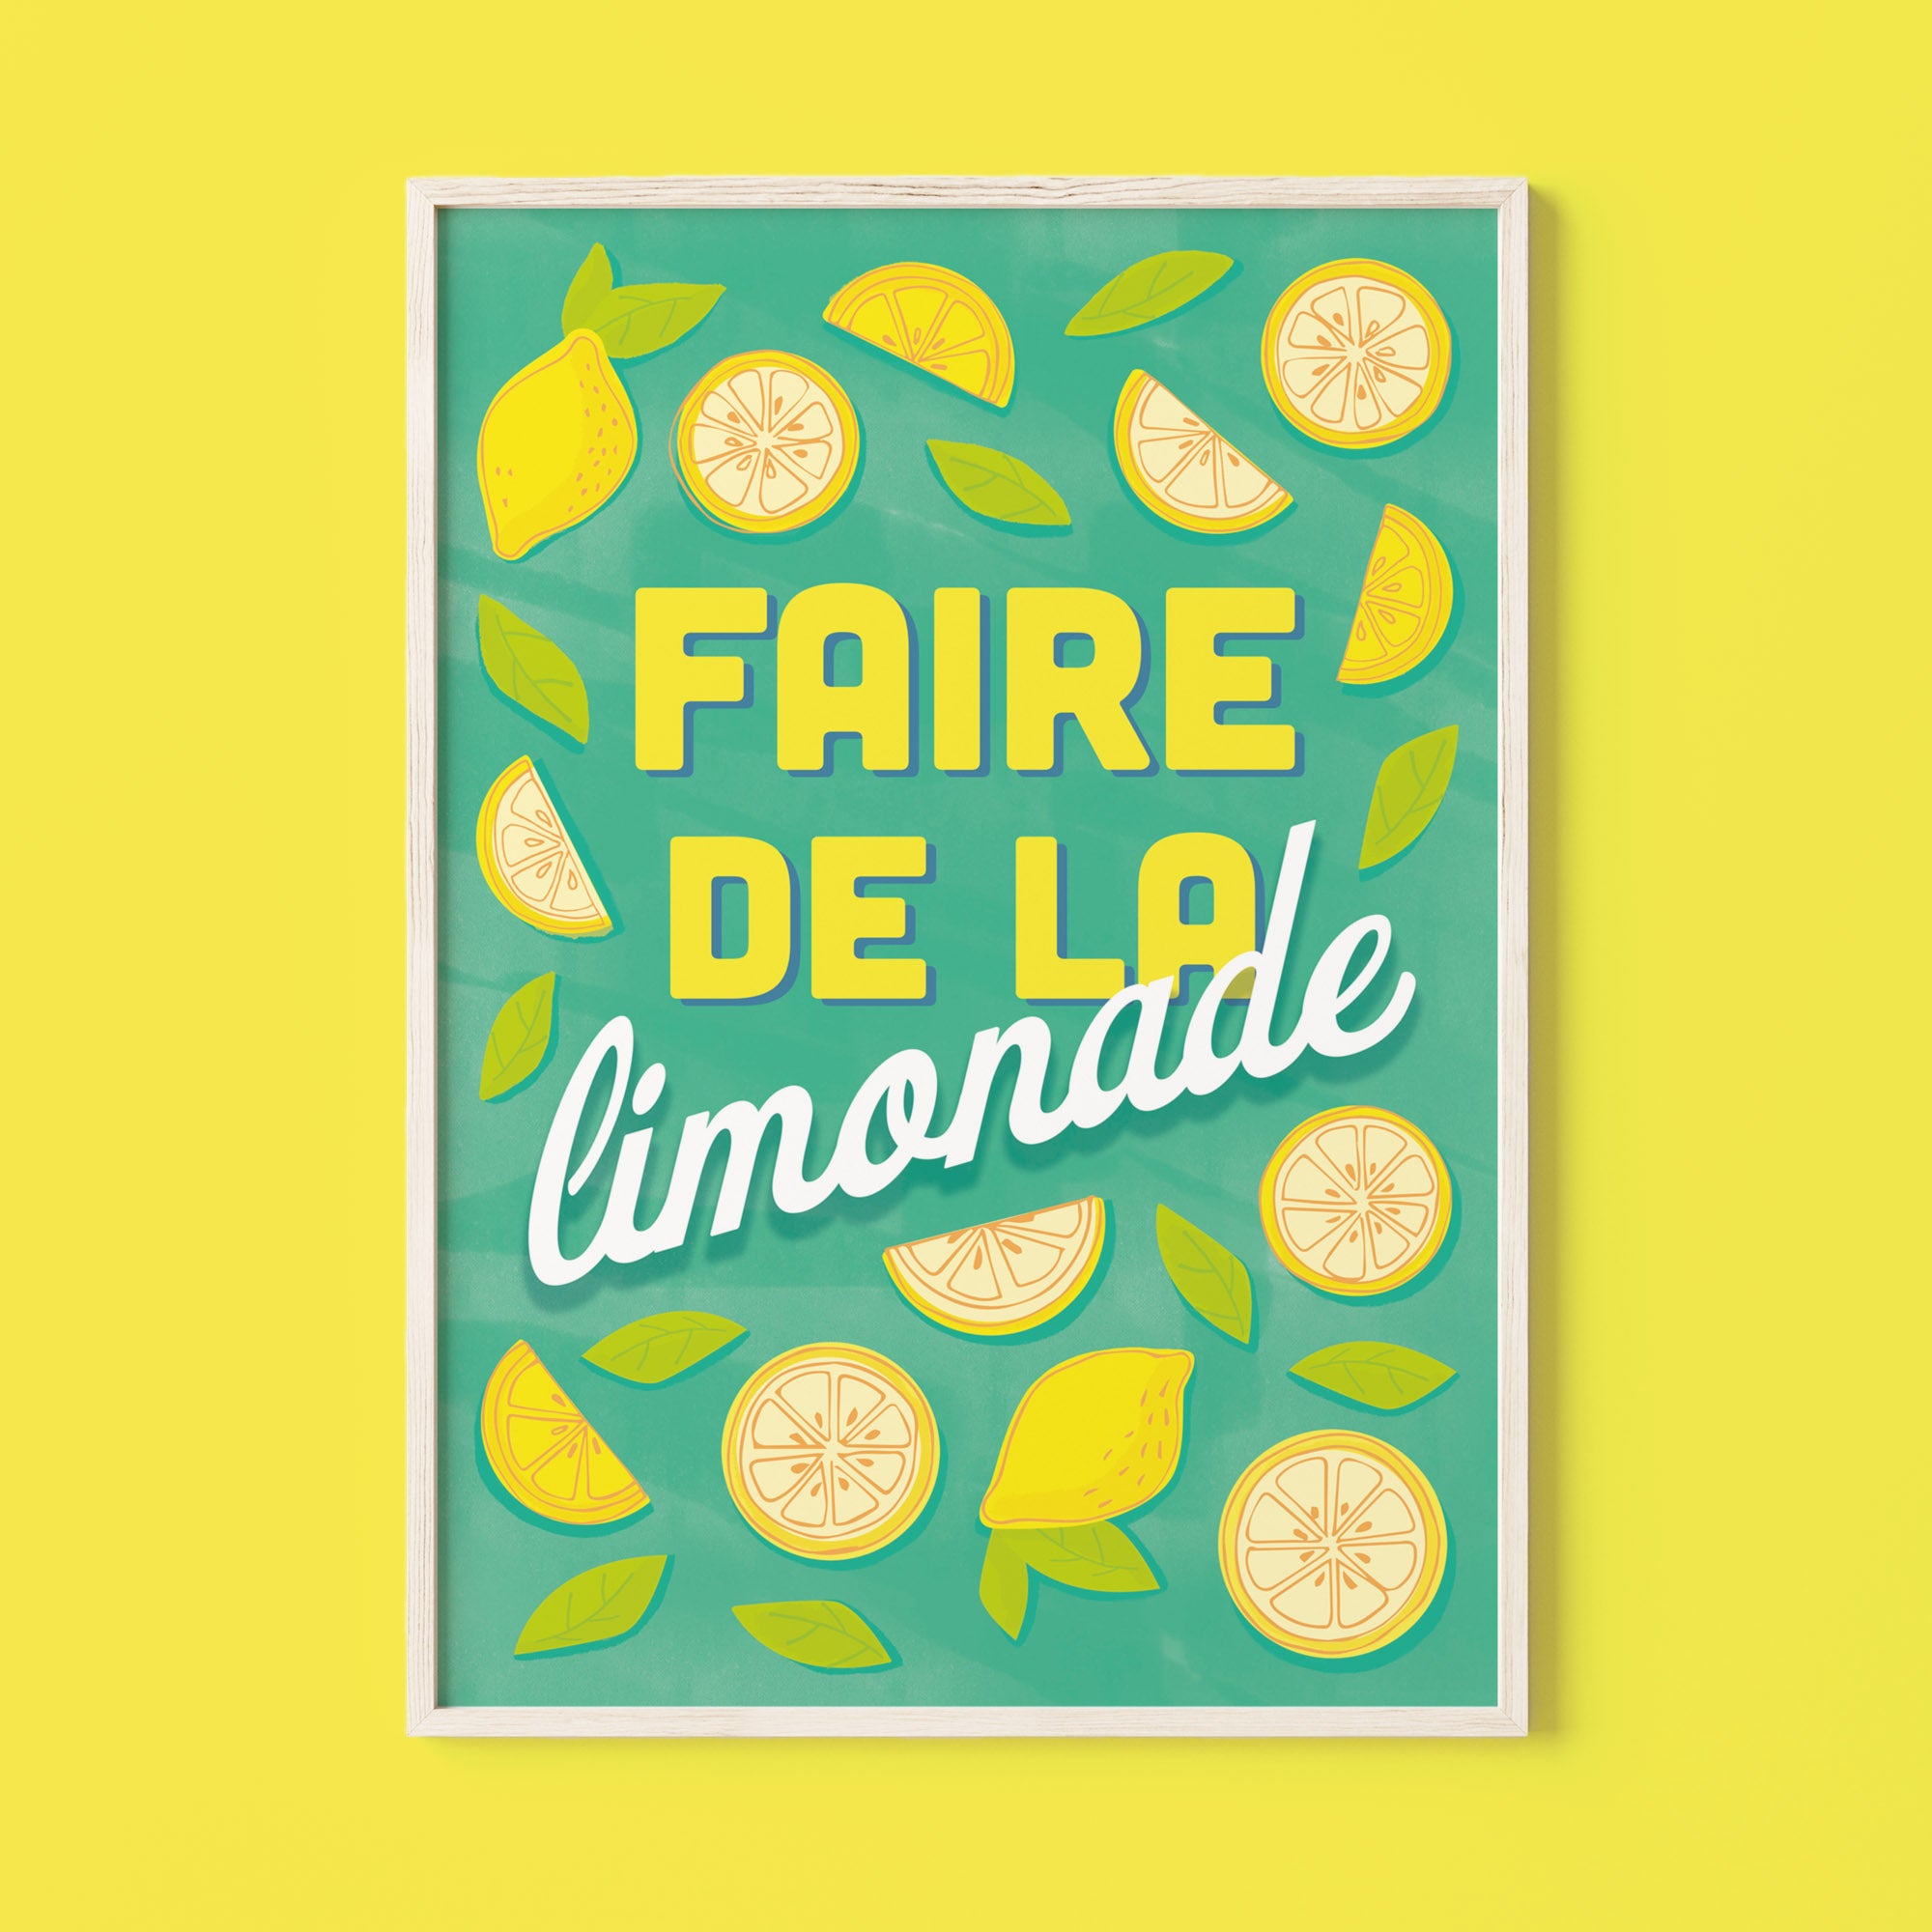 Make lemonade eco - friendly print